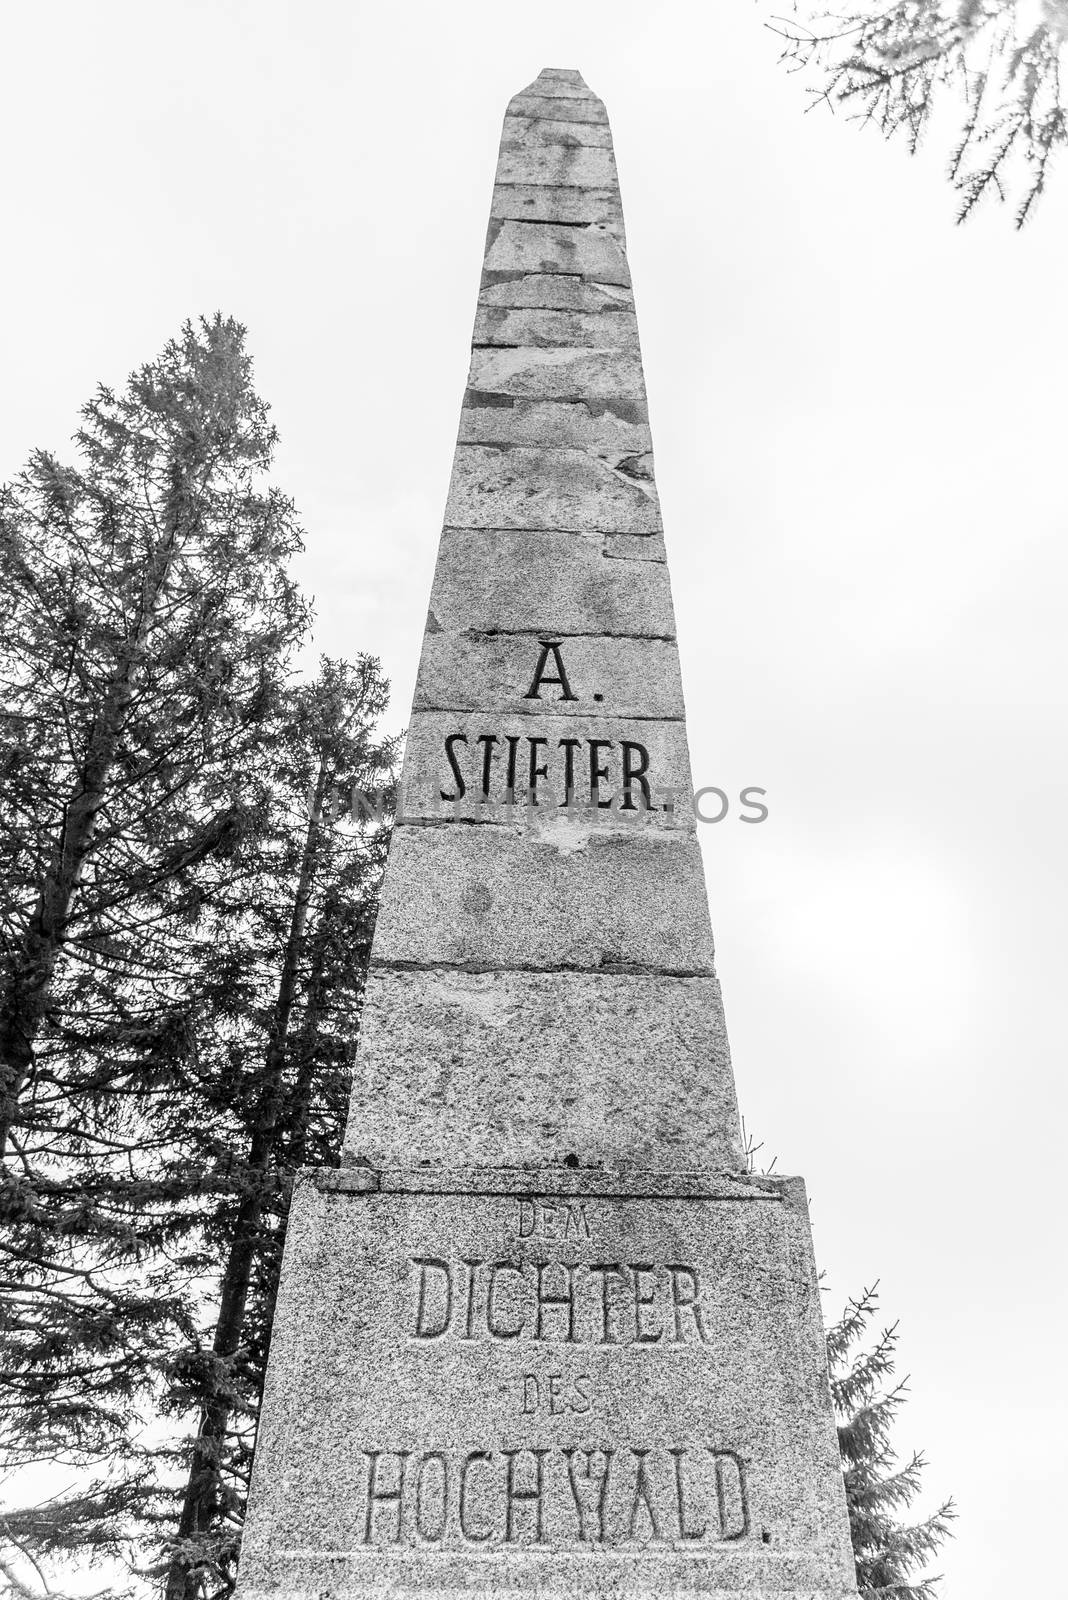 Stone monument of Adalbert Stifter - writer of Sumava Mounains - above Plechy Lake, Sumava National Park, Czech Republic by pyty